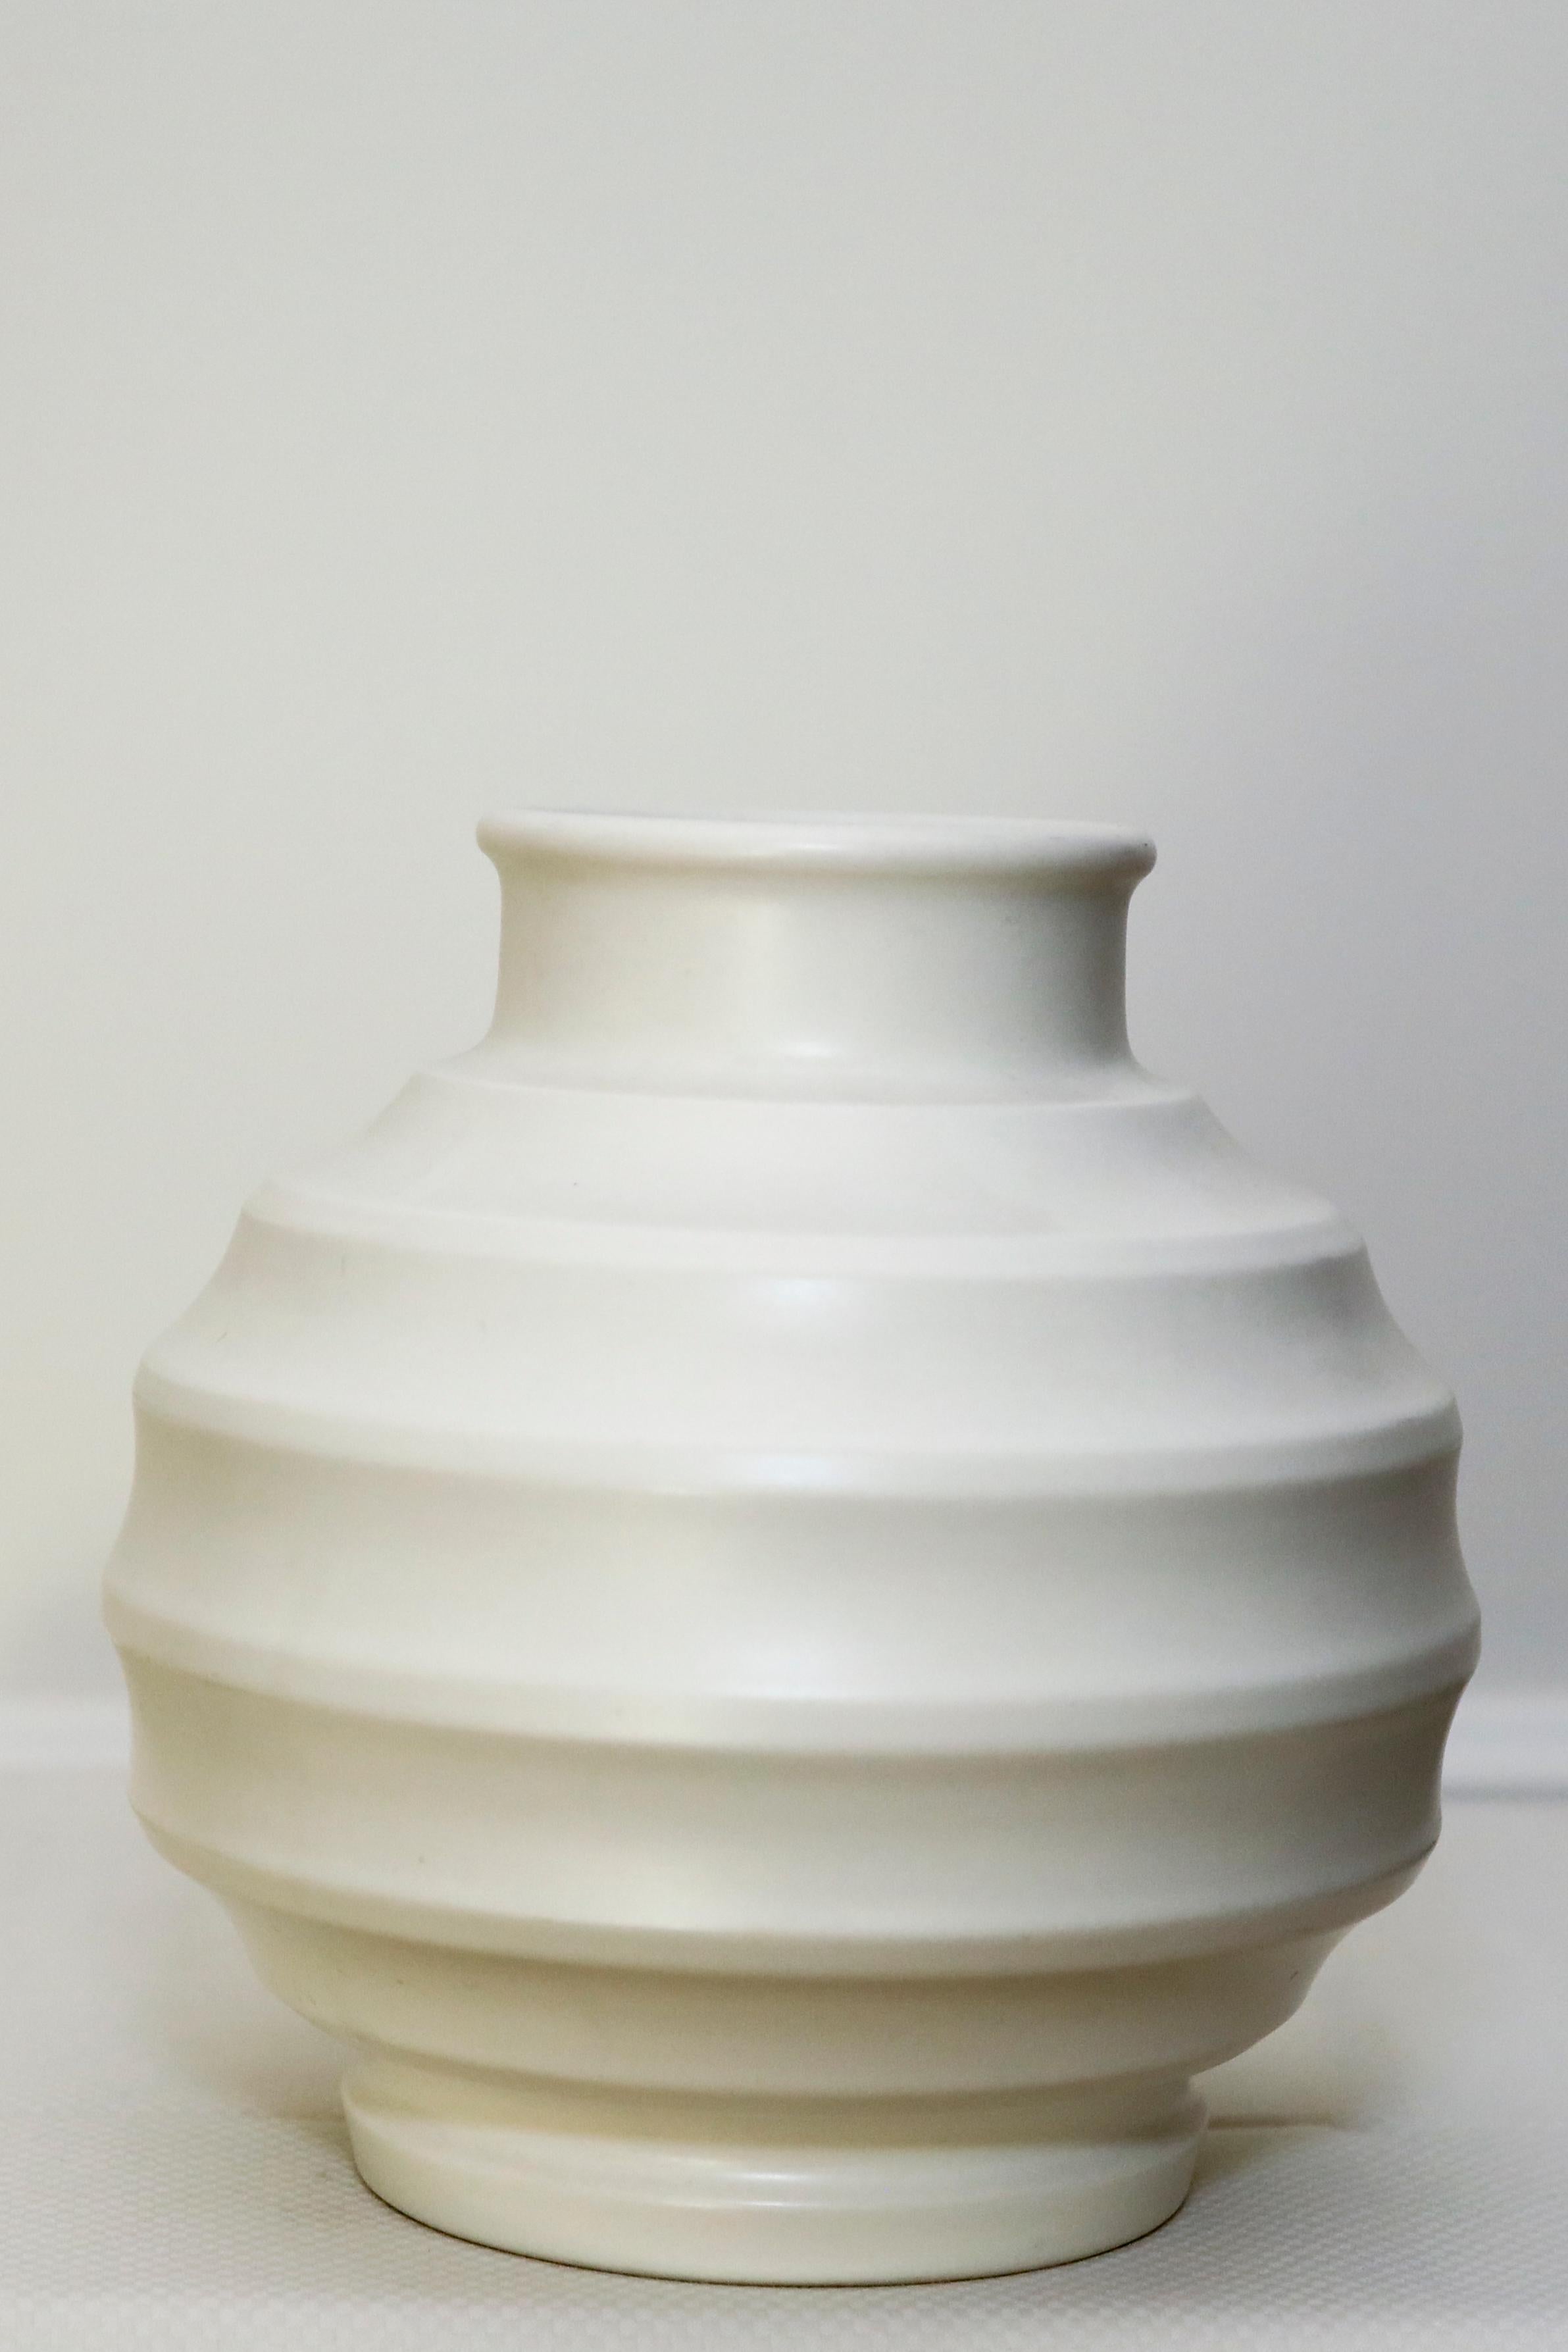 Keith Murray, architecte et designer industriel, a créé ce vase particulier, "Chinese Lantern" en pierre de lune blanche ( forme no.3765) Fabriqué en Angleterre.  Ce vase, dont le prix unitaire est de 1200 $, est disponible en jaune et en vert.  Un